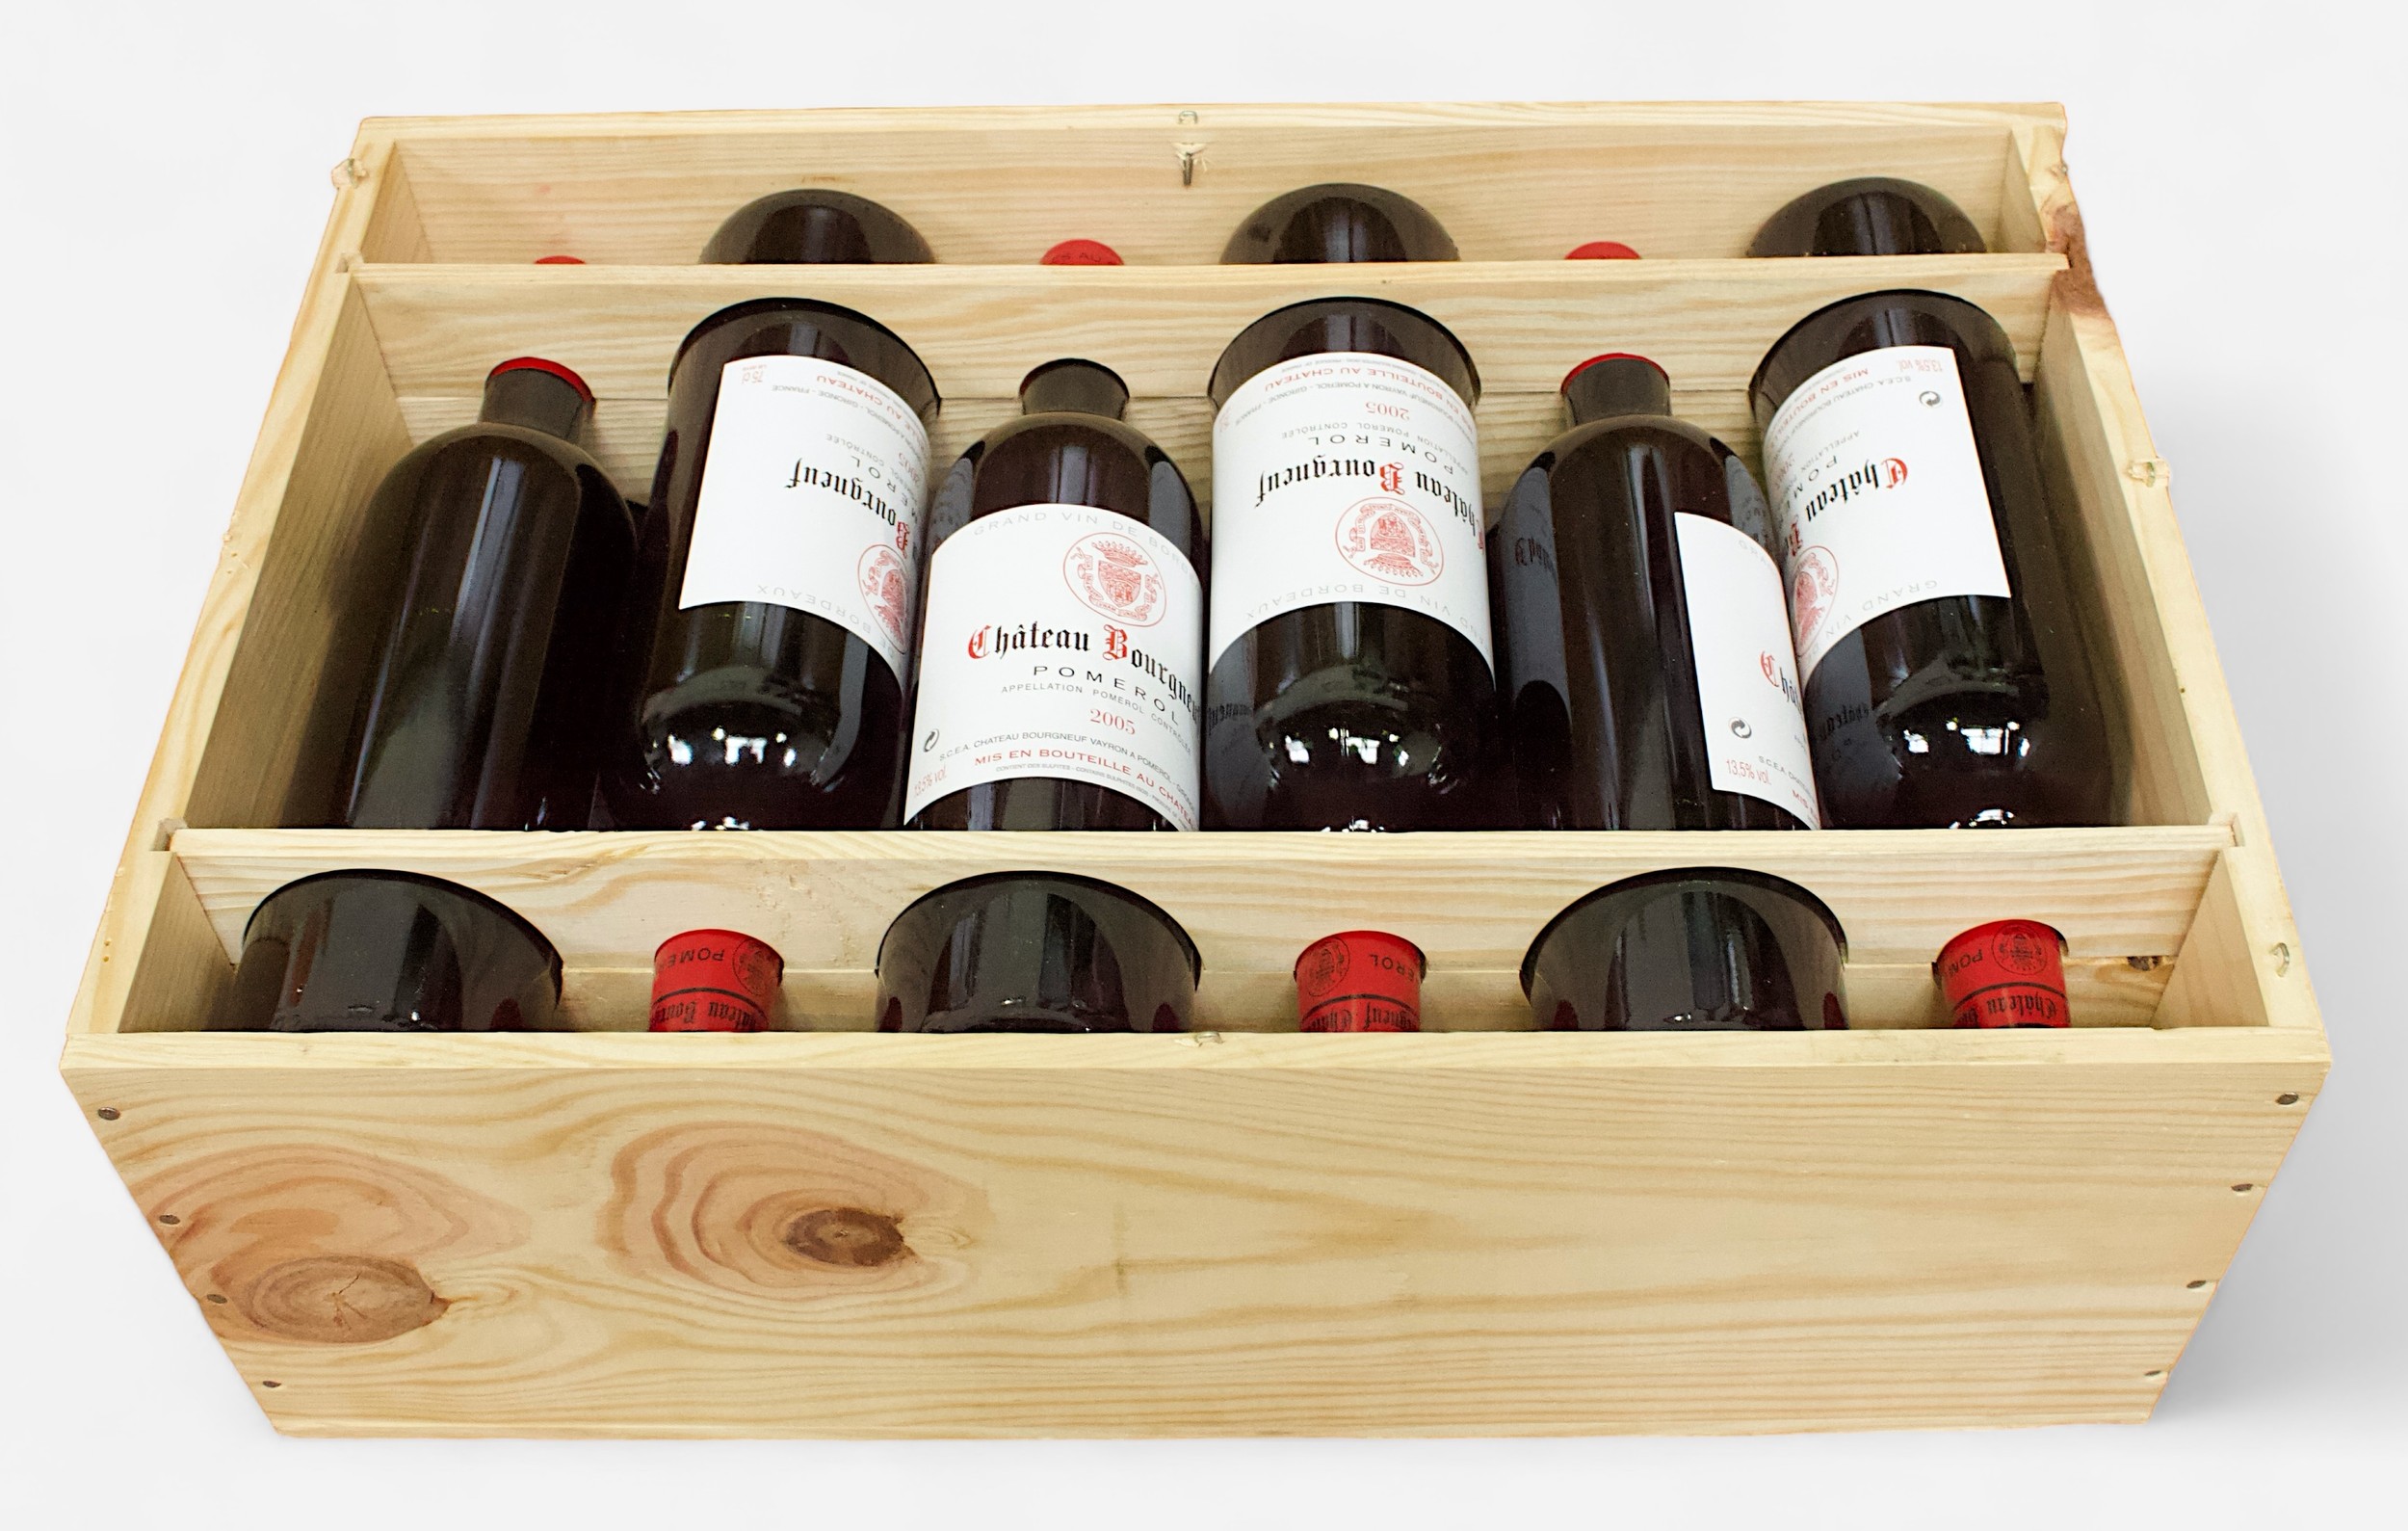 A case of twelve 75cl bottles of Chateau Bourgneuf Pomerol, Grand vin de Bordeaux, 2005 vintage, all - Bild 2 aus 2